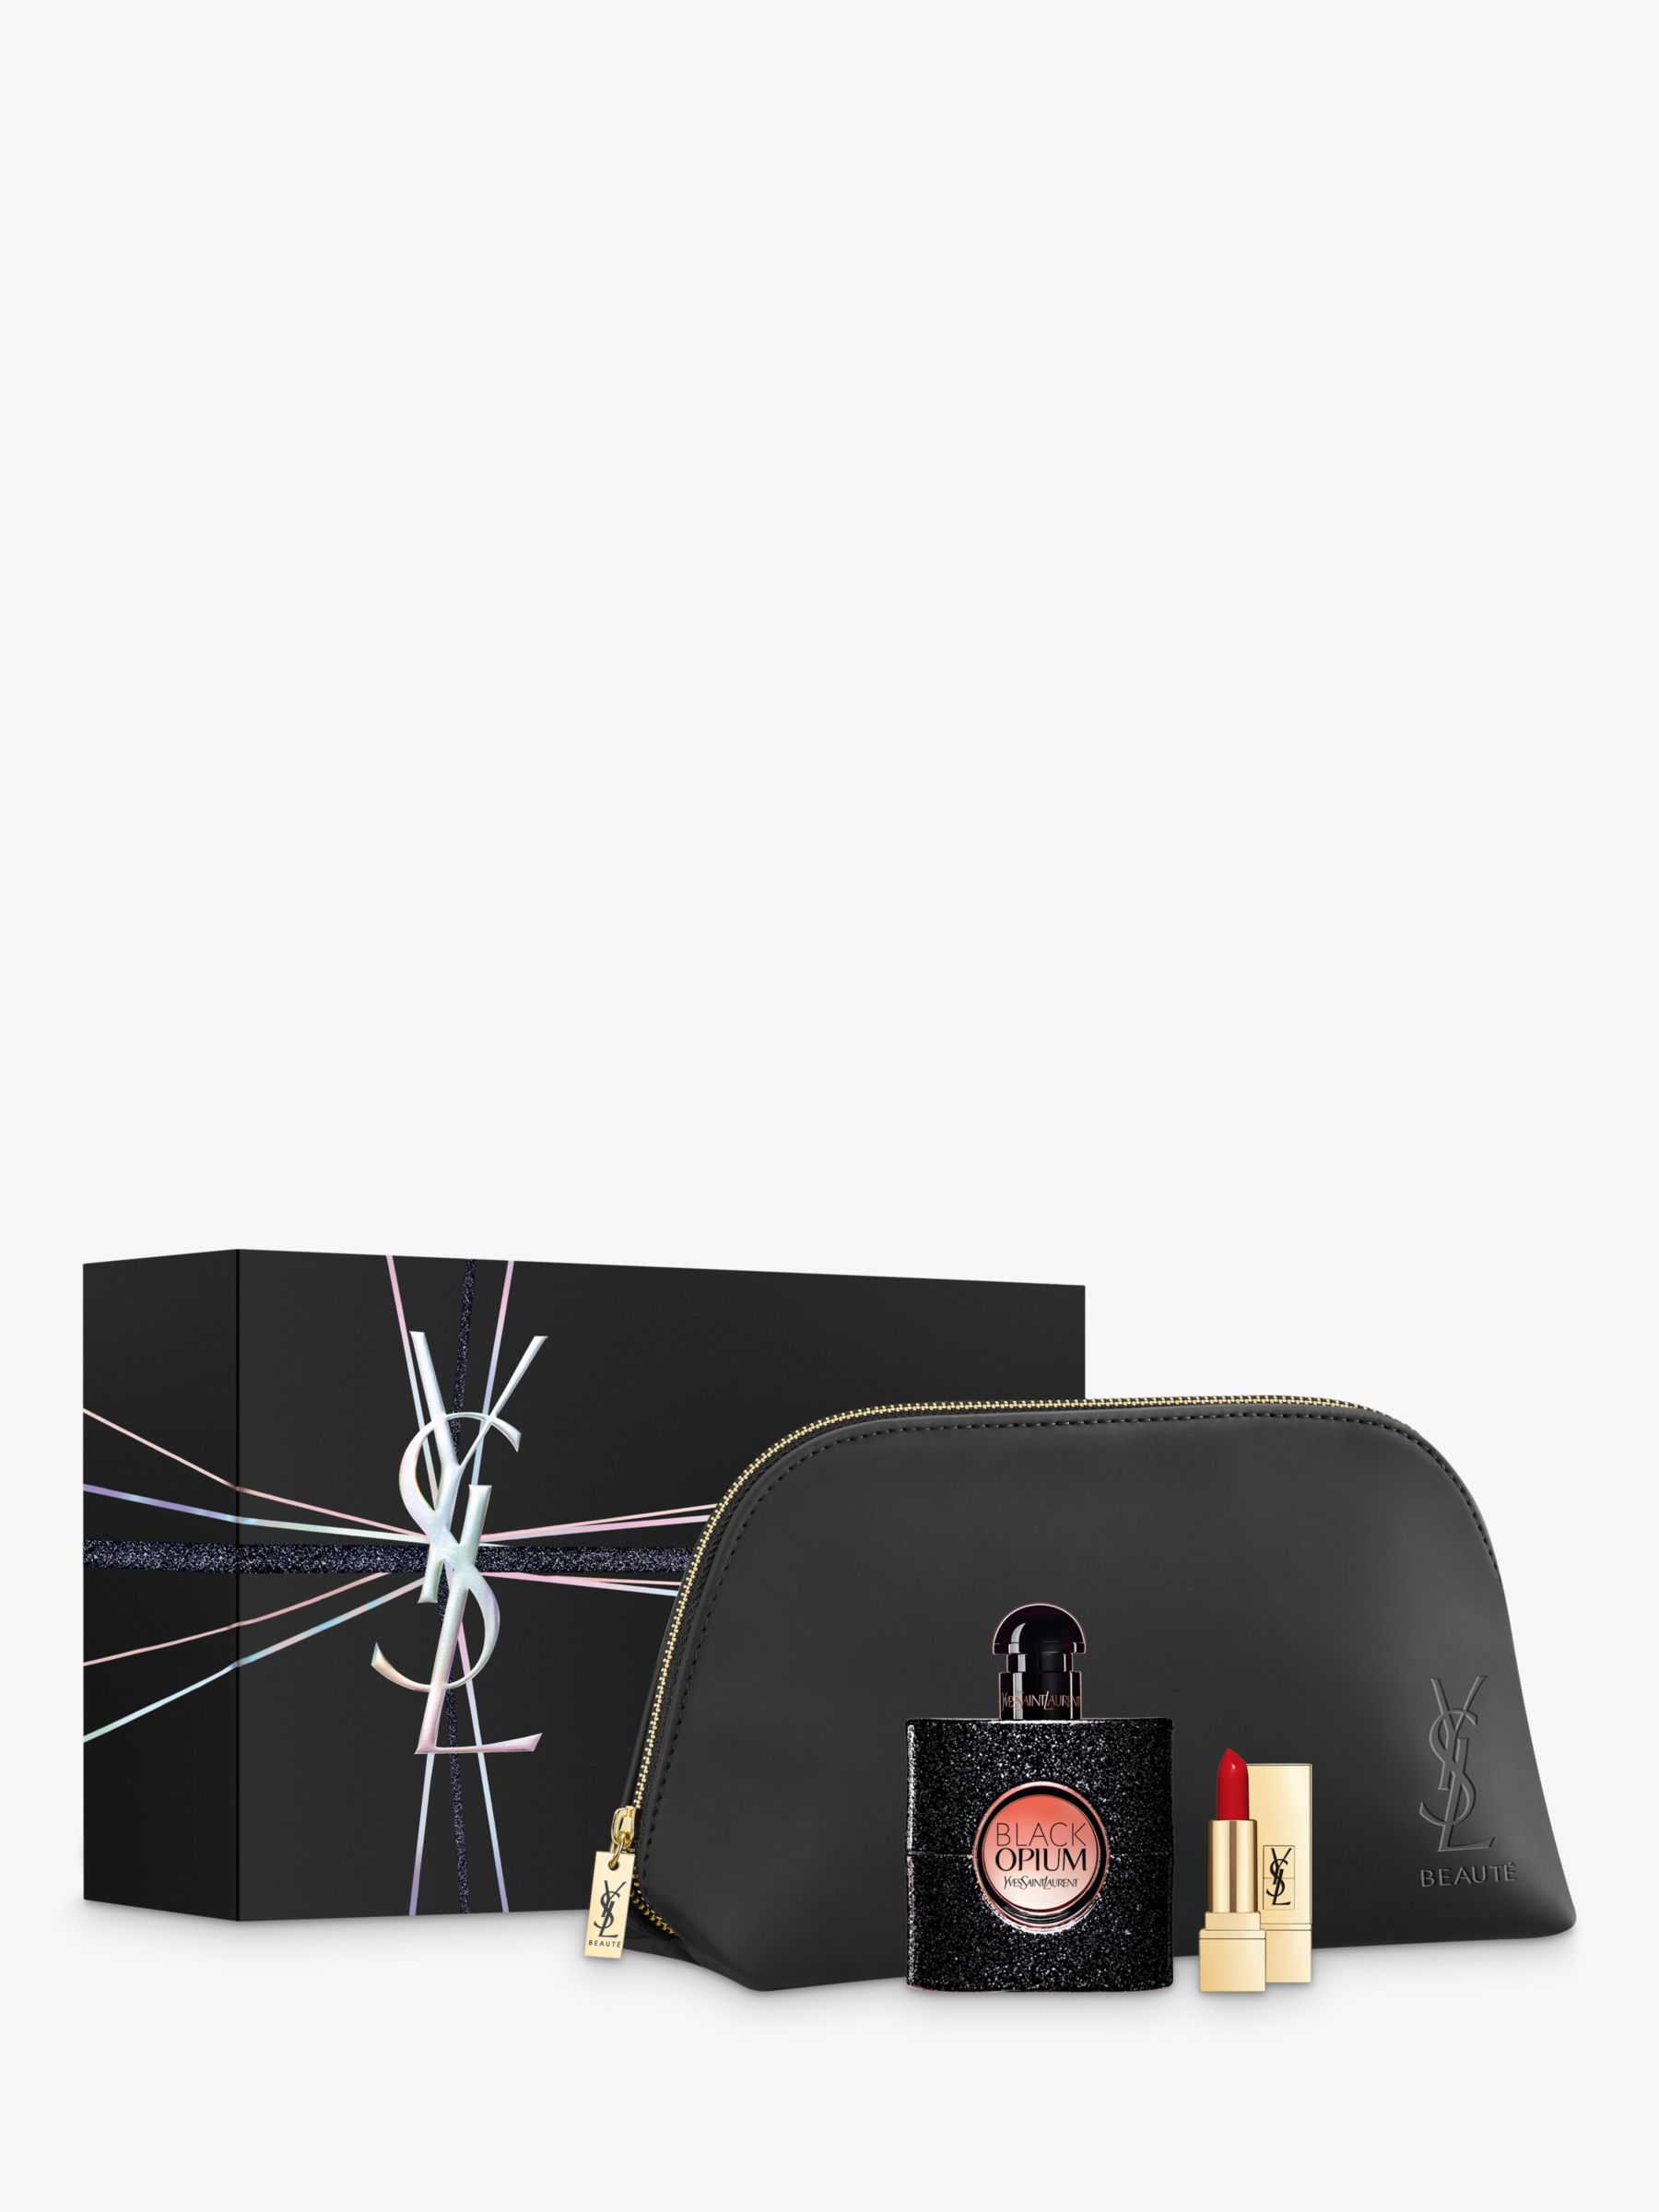 Yves Saint Laurent Black Opium Eau de Parfum, 50ml & Rouge Pur Couture Gift Set